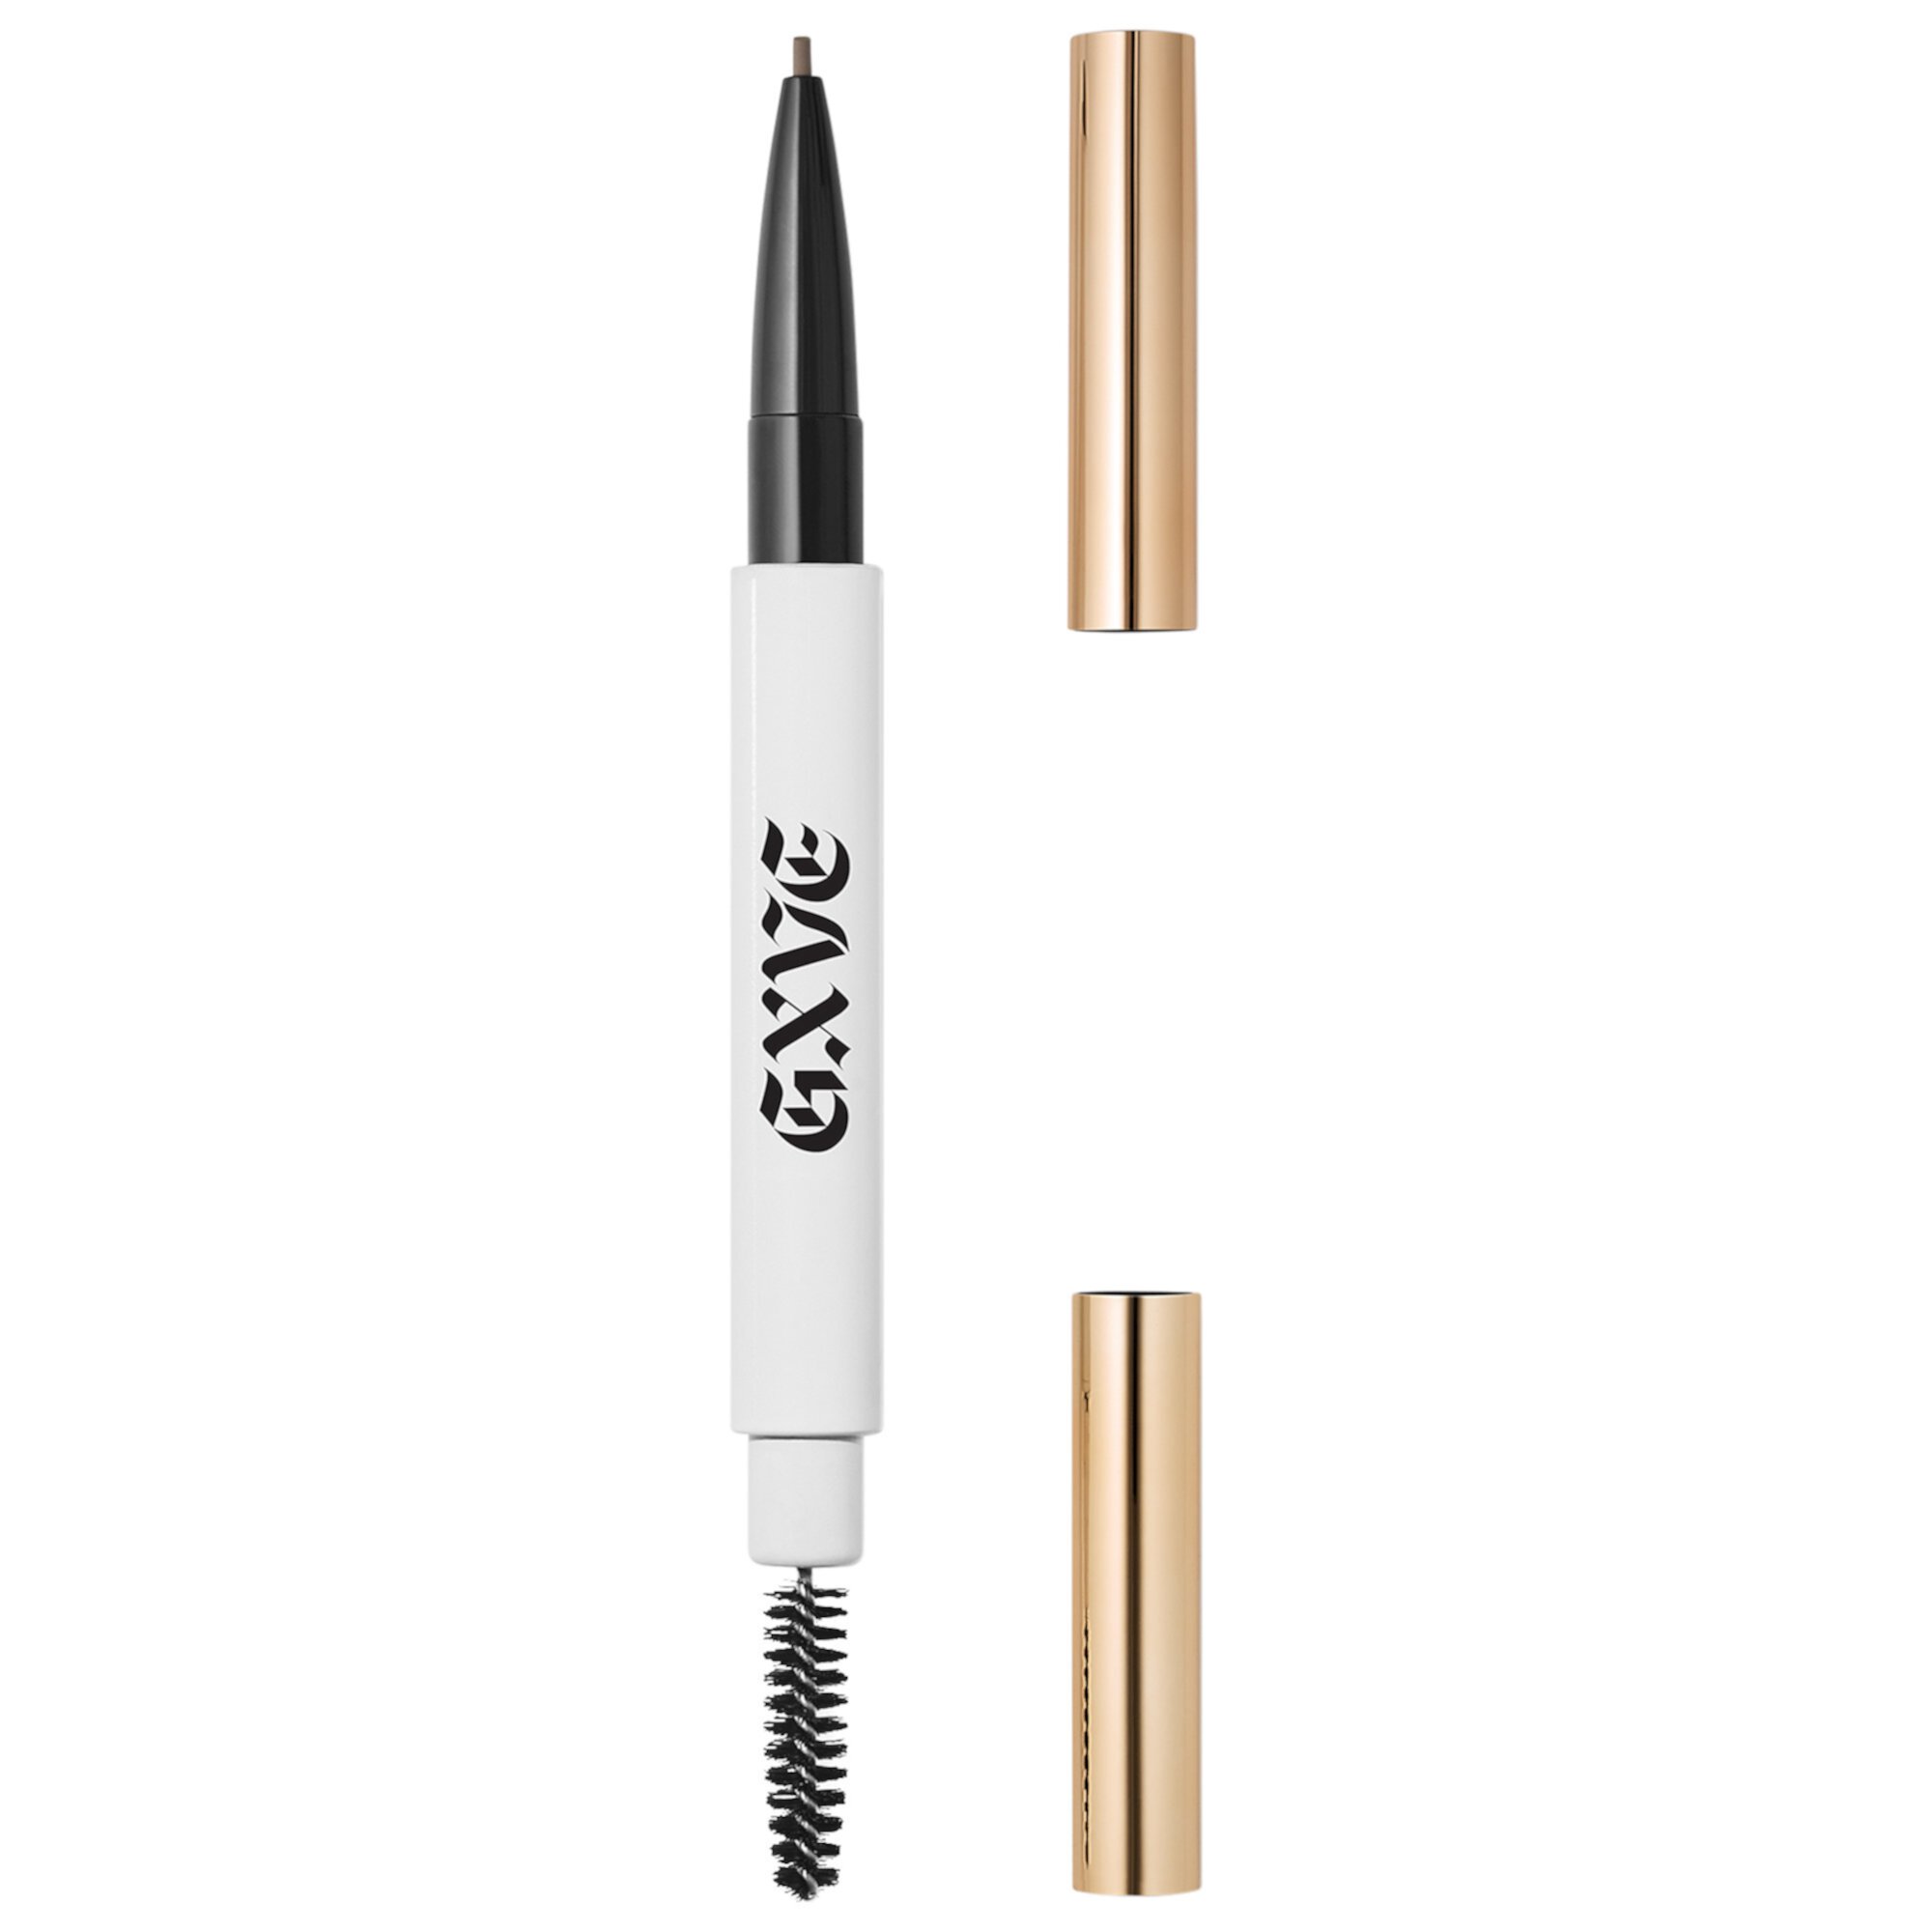 Hella On Point Clean Ультратонкий карандаш для бровей GXVE BY GWEN STEFANI